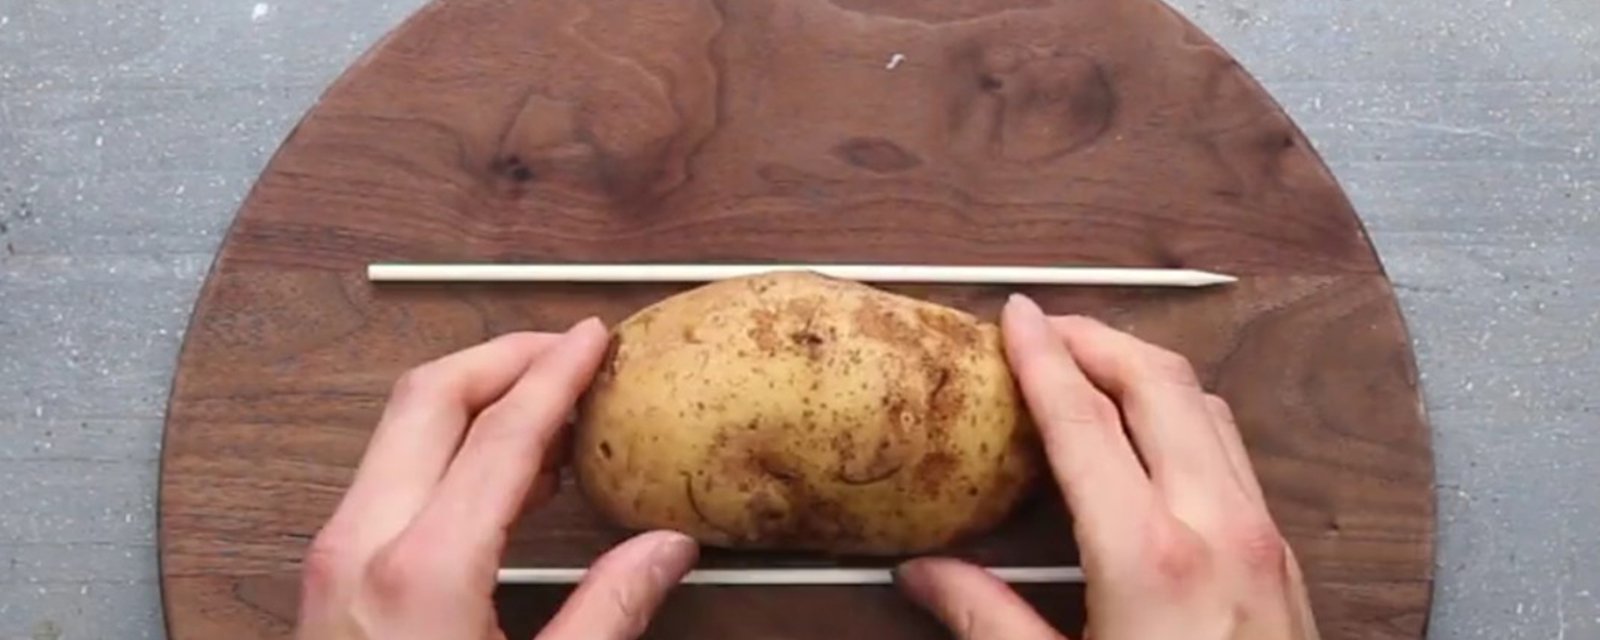 Il place une pomme de terre entre 2 baguettes afin de nous montrer une toute nouvelle façon d'apprêter les pommes de terre